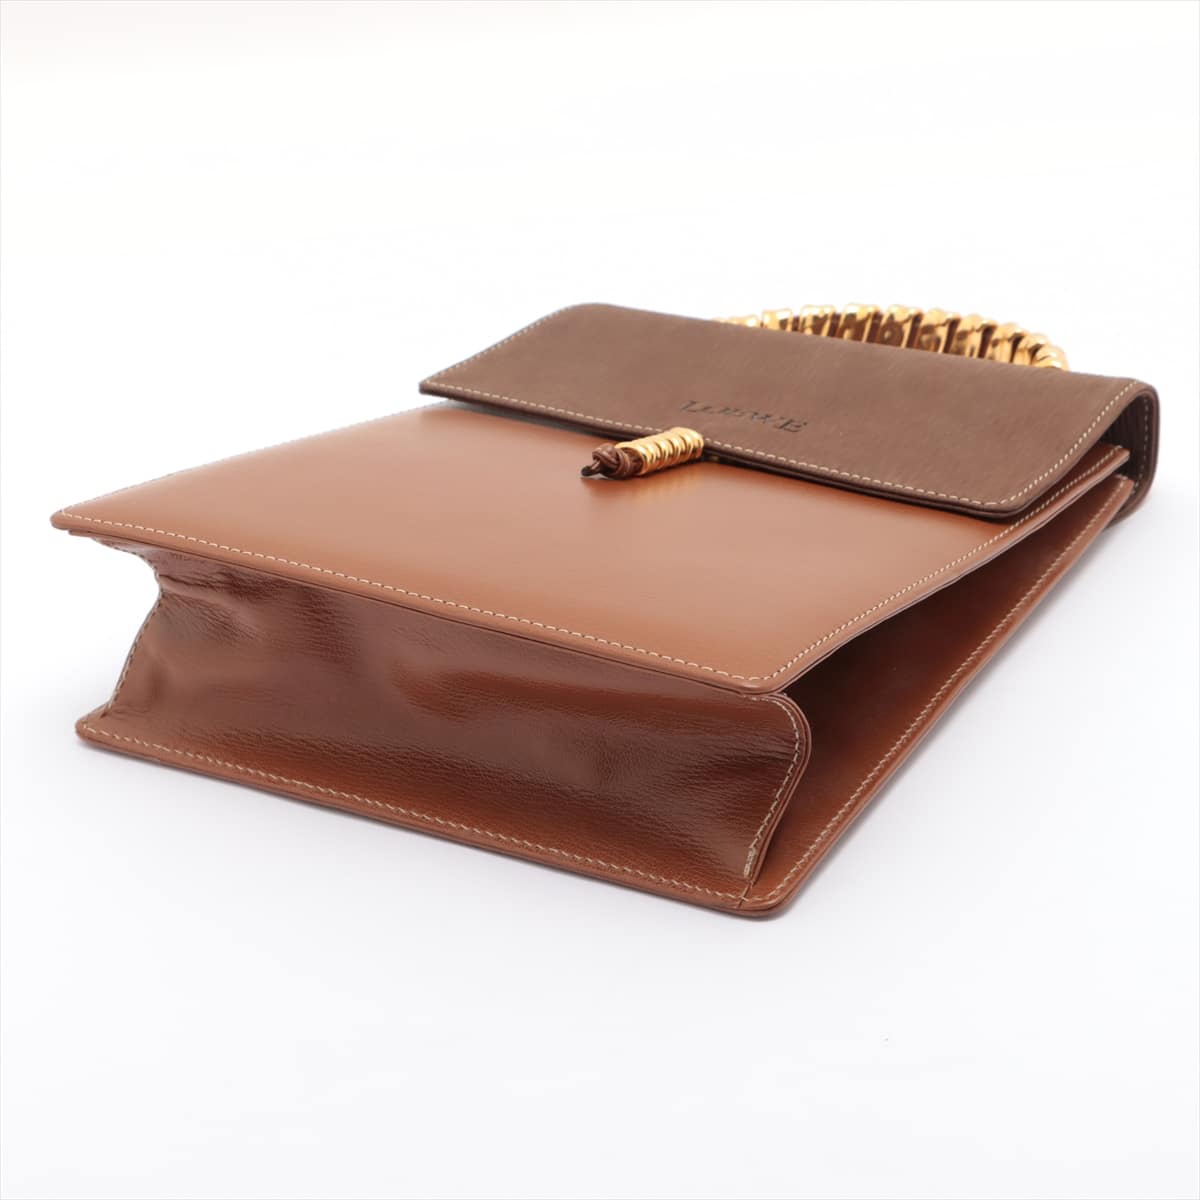 Loewe Velazquez Leather Hand bag Brown No shoulder strap